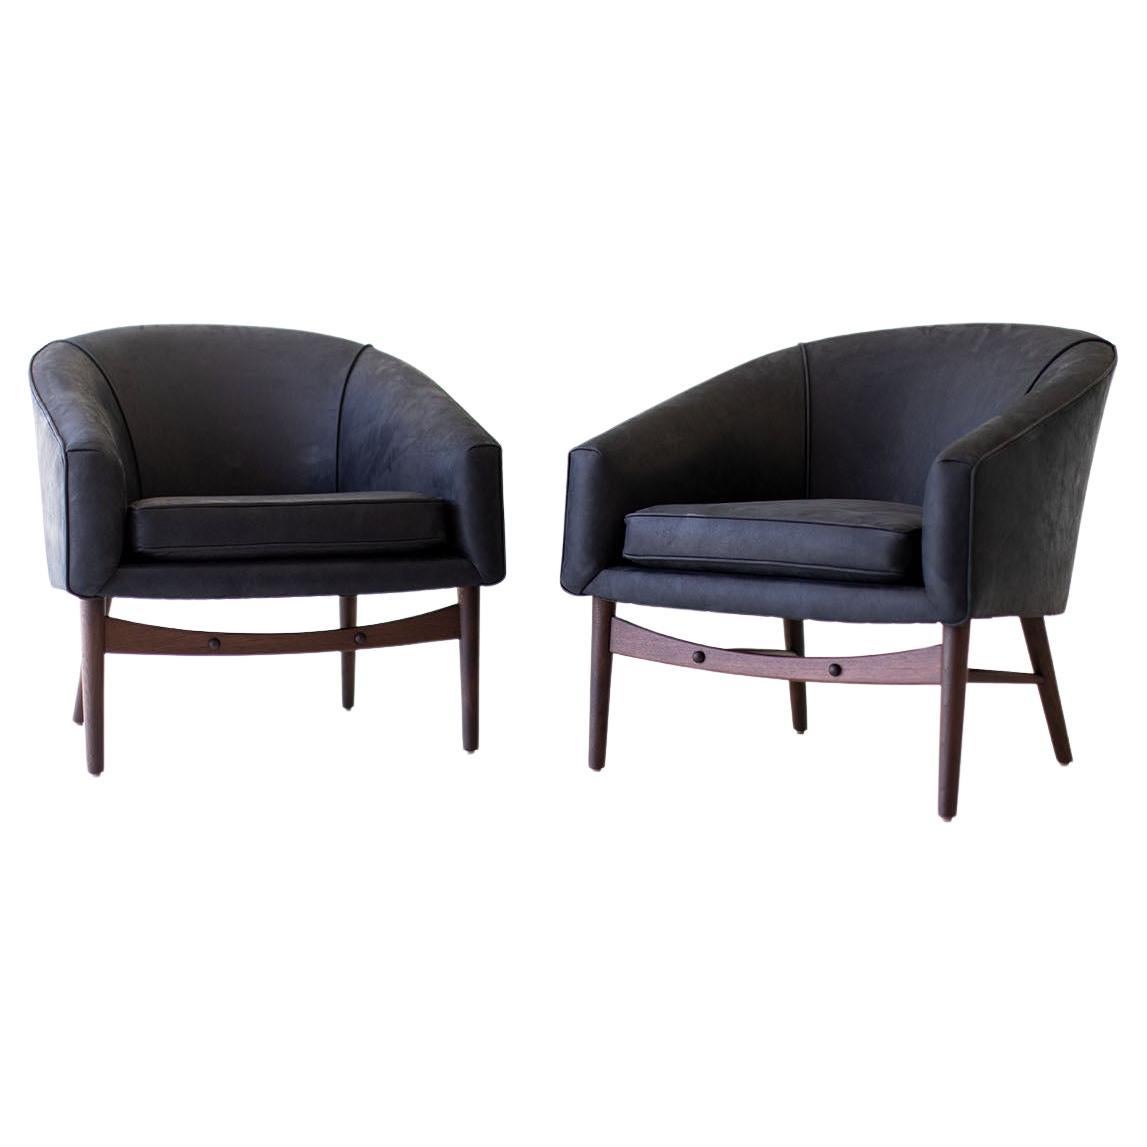 Fauteuils de salon Craft Associates, chaises longues en cuir, cuir noir et noyer